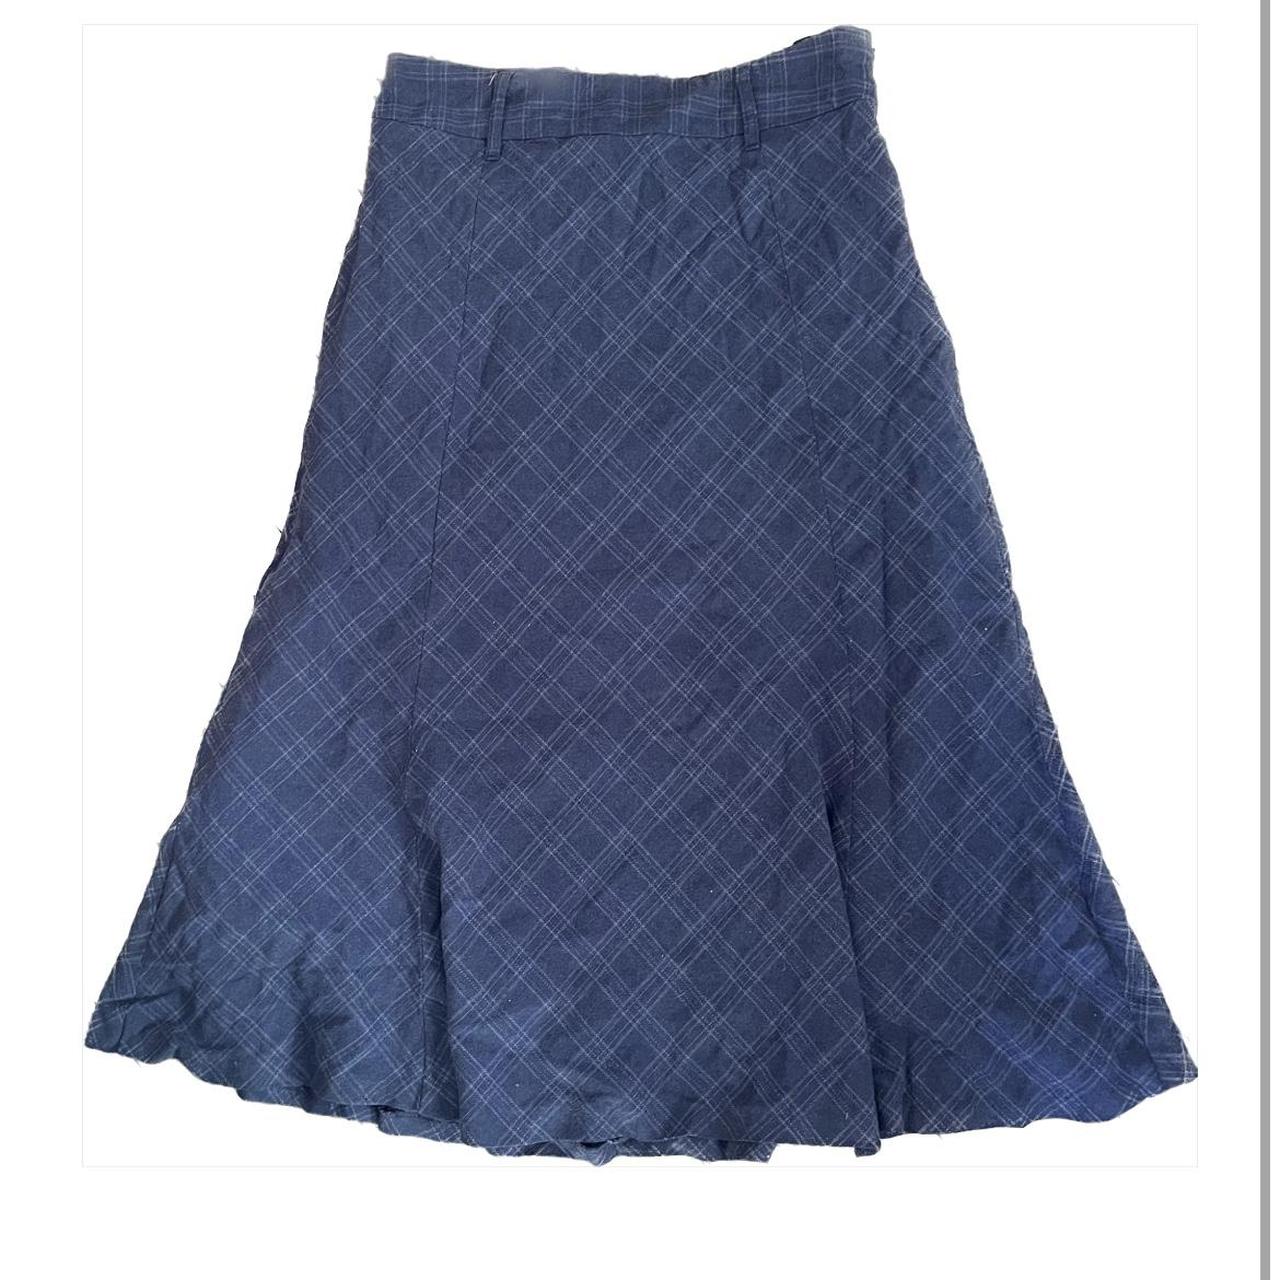 long grey medium plaid skirt, would best fit m-l - Depop